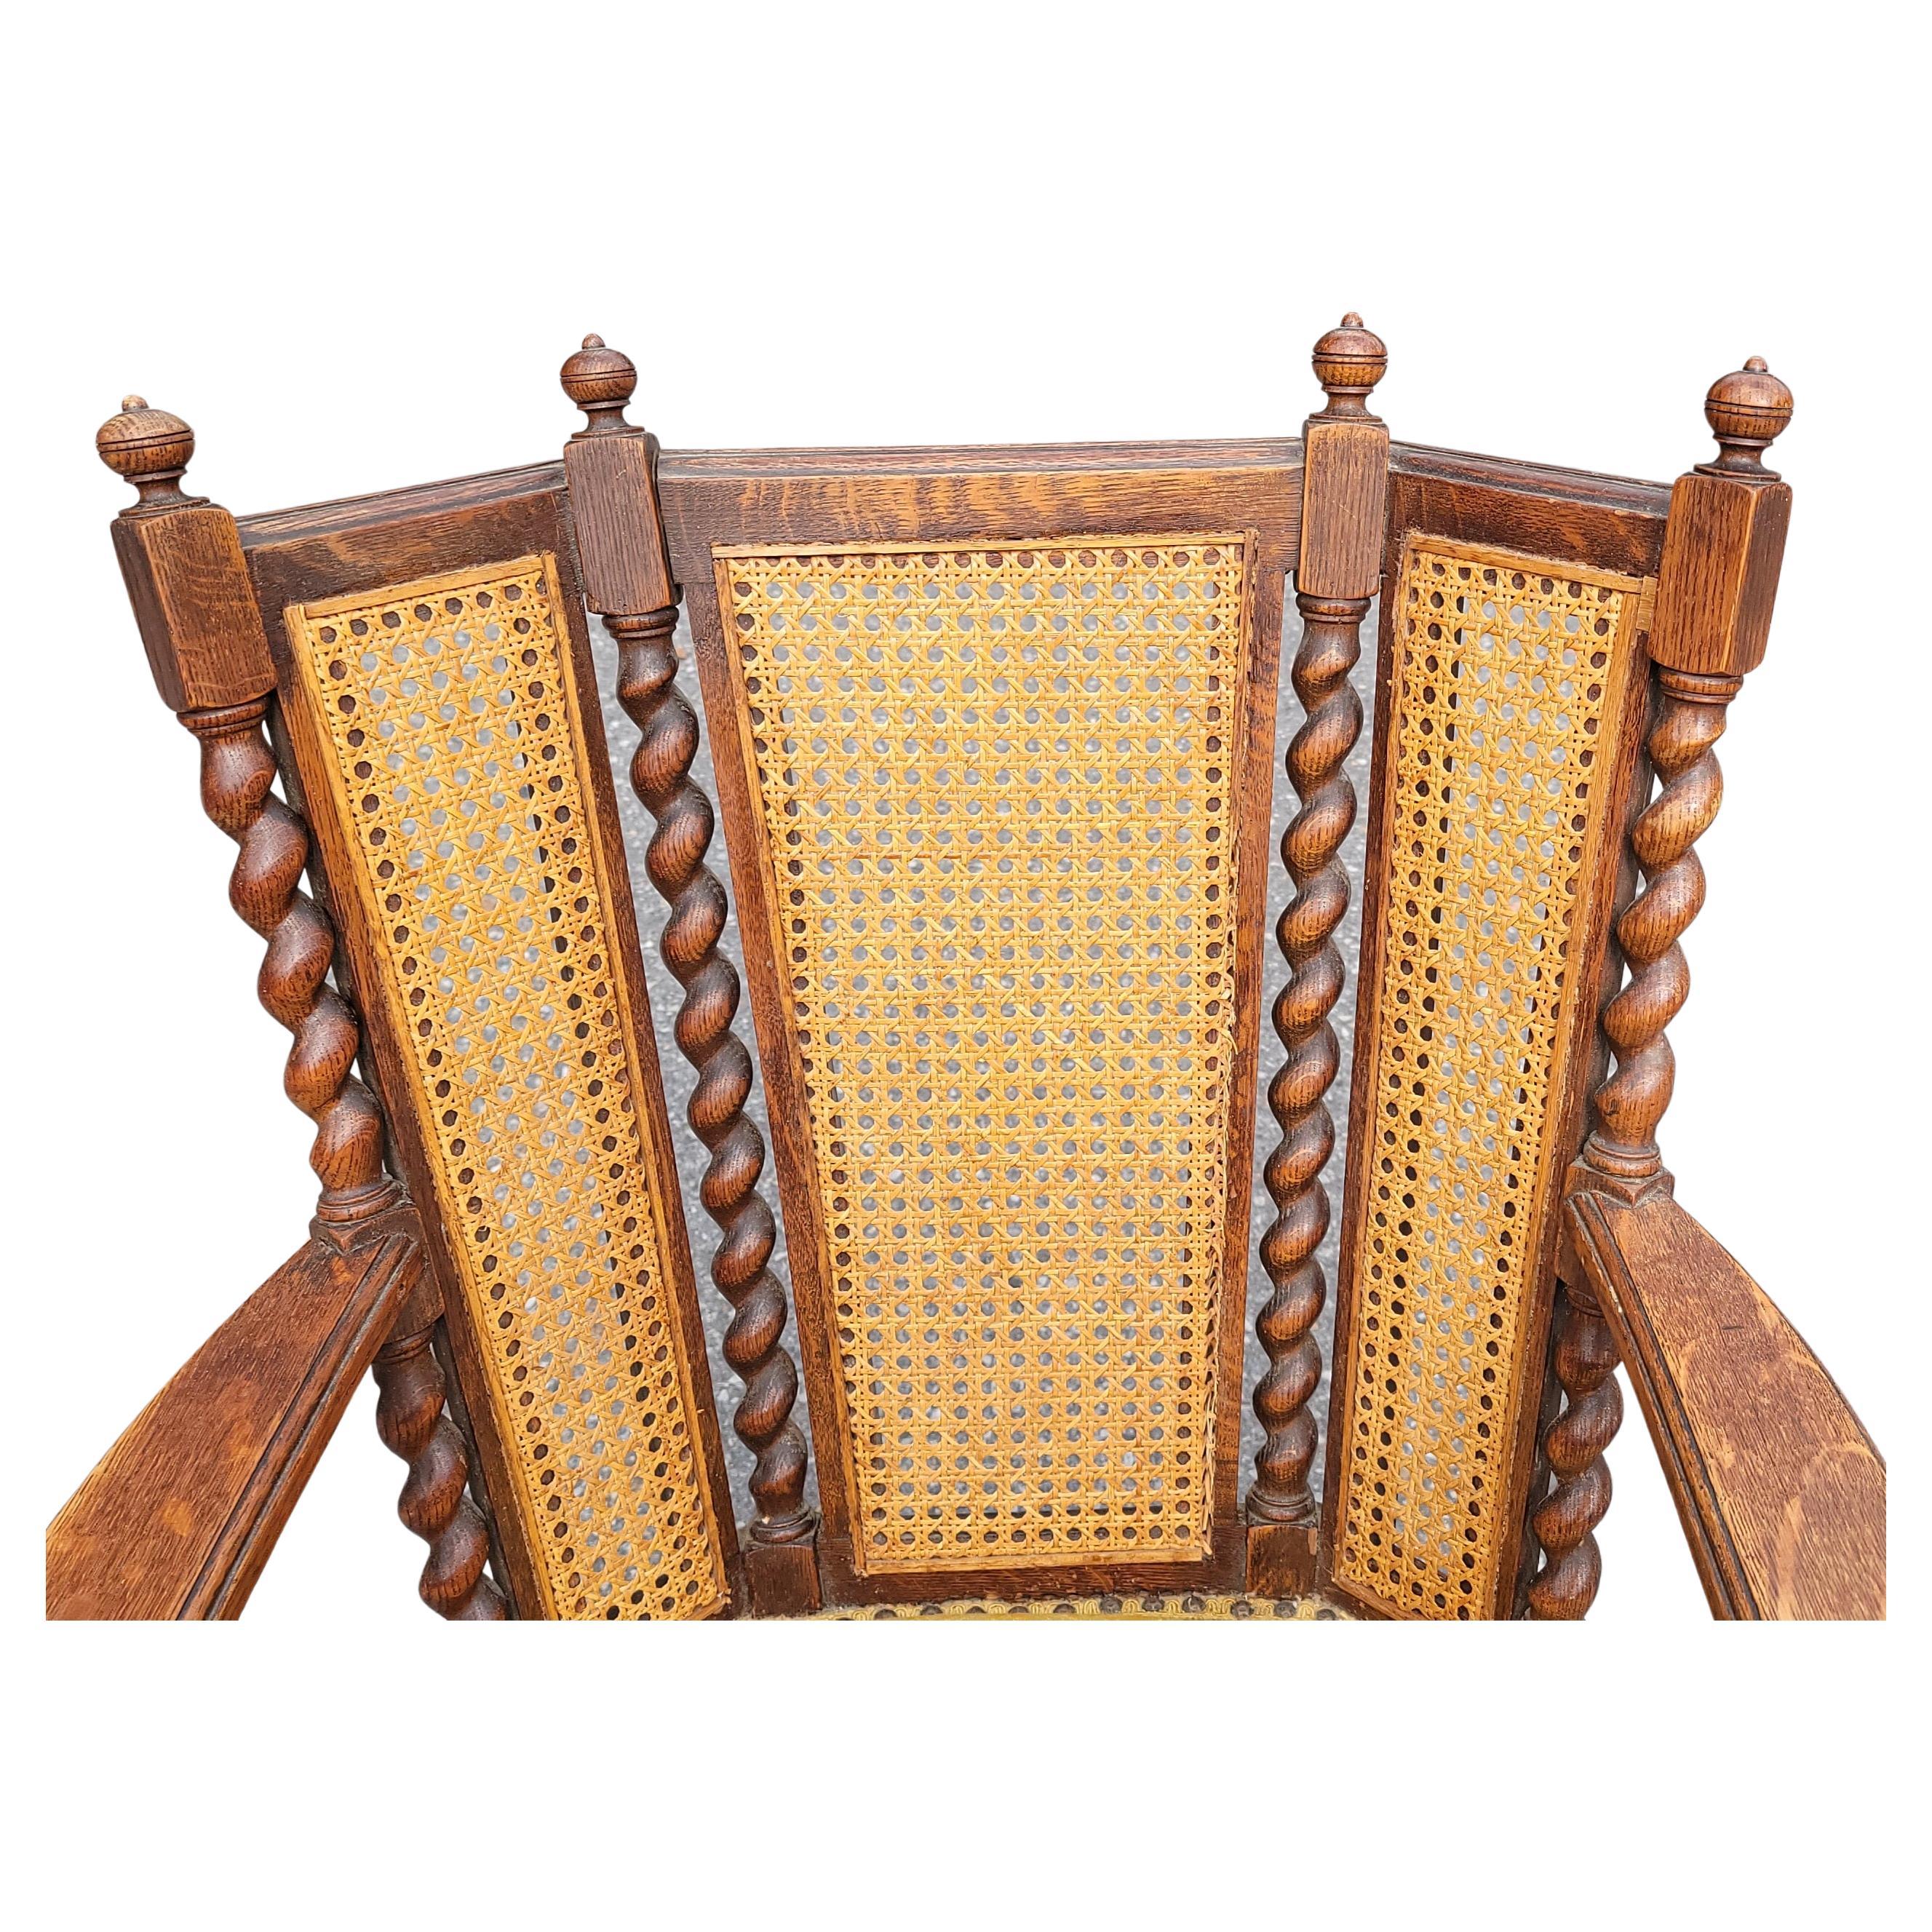 Antique chaise berçante Edouardienne à trois panneaux Caned Back with Barley Twist frame in mission oak. Le siège rembourré est ferme, mais il faut le rembourrer. Nous remeublerons le siège dans la couleur qui correspond le mieux à votre